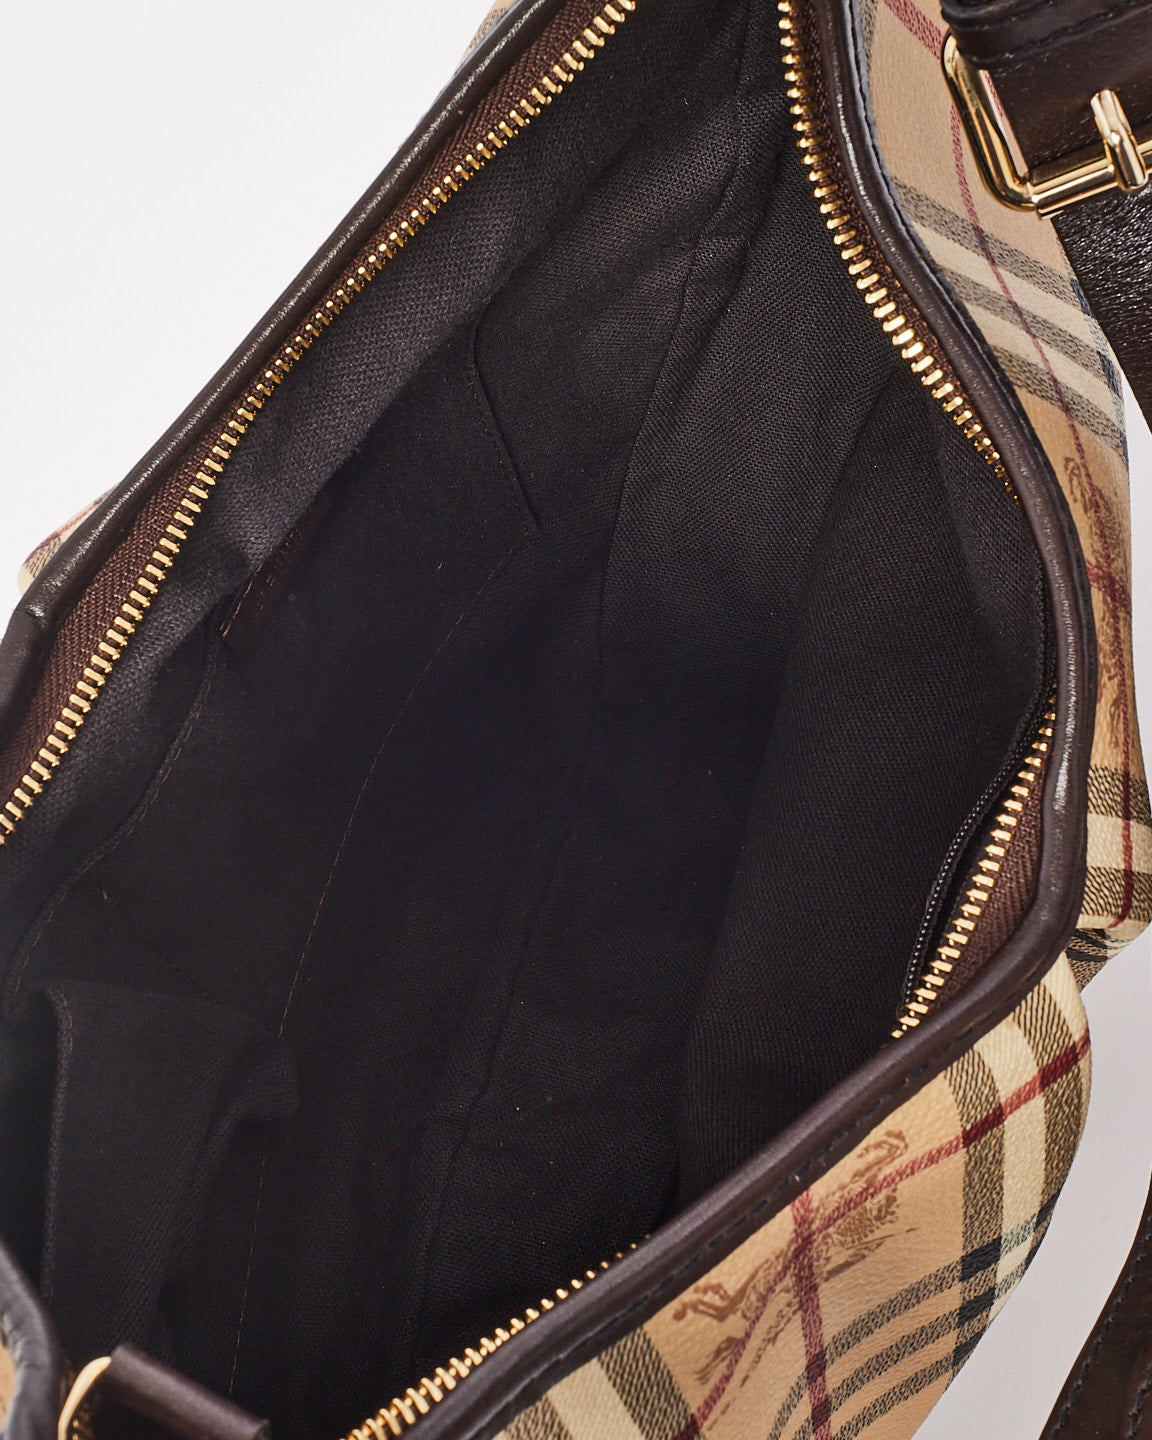 Burberry Haymarket Check Leather Hobo Shoulder Bag